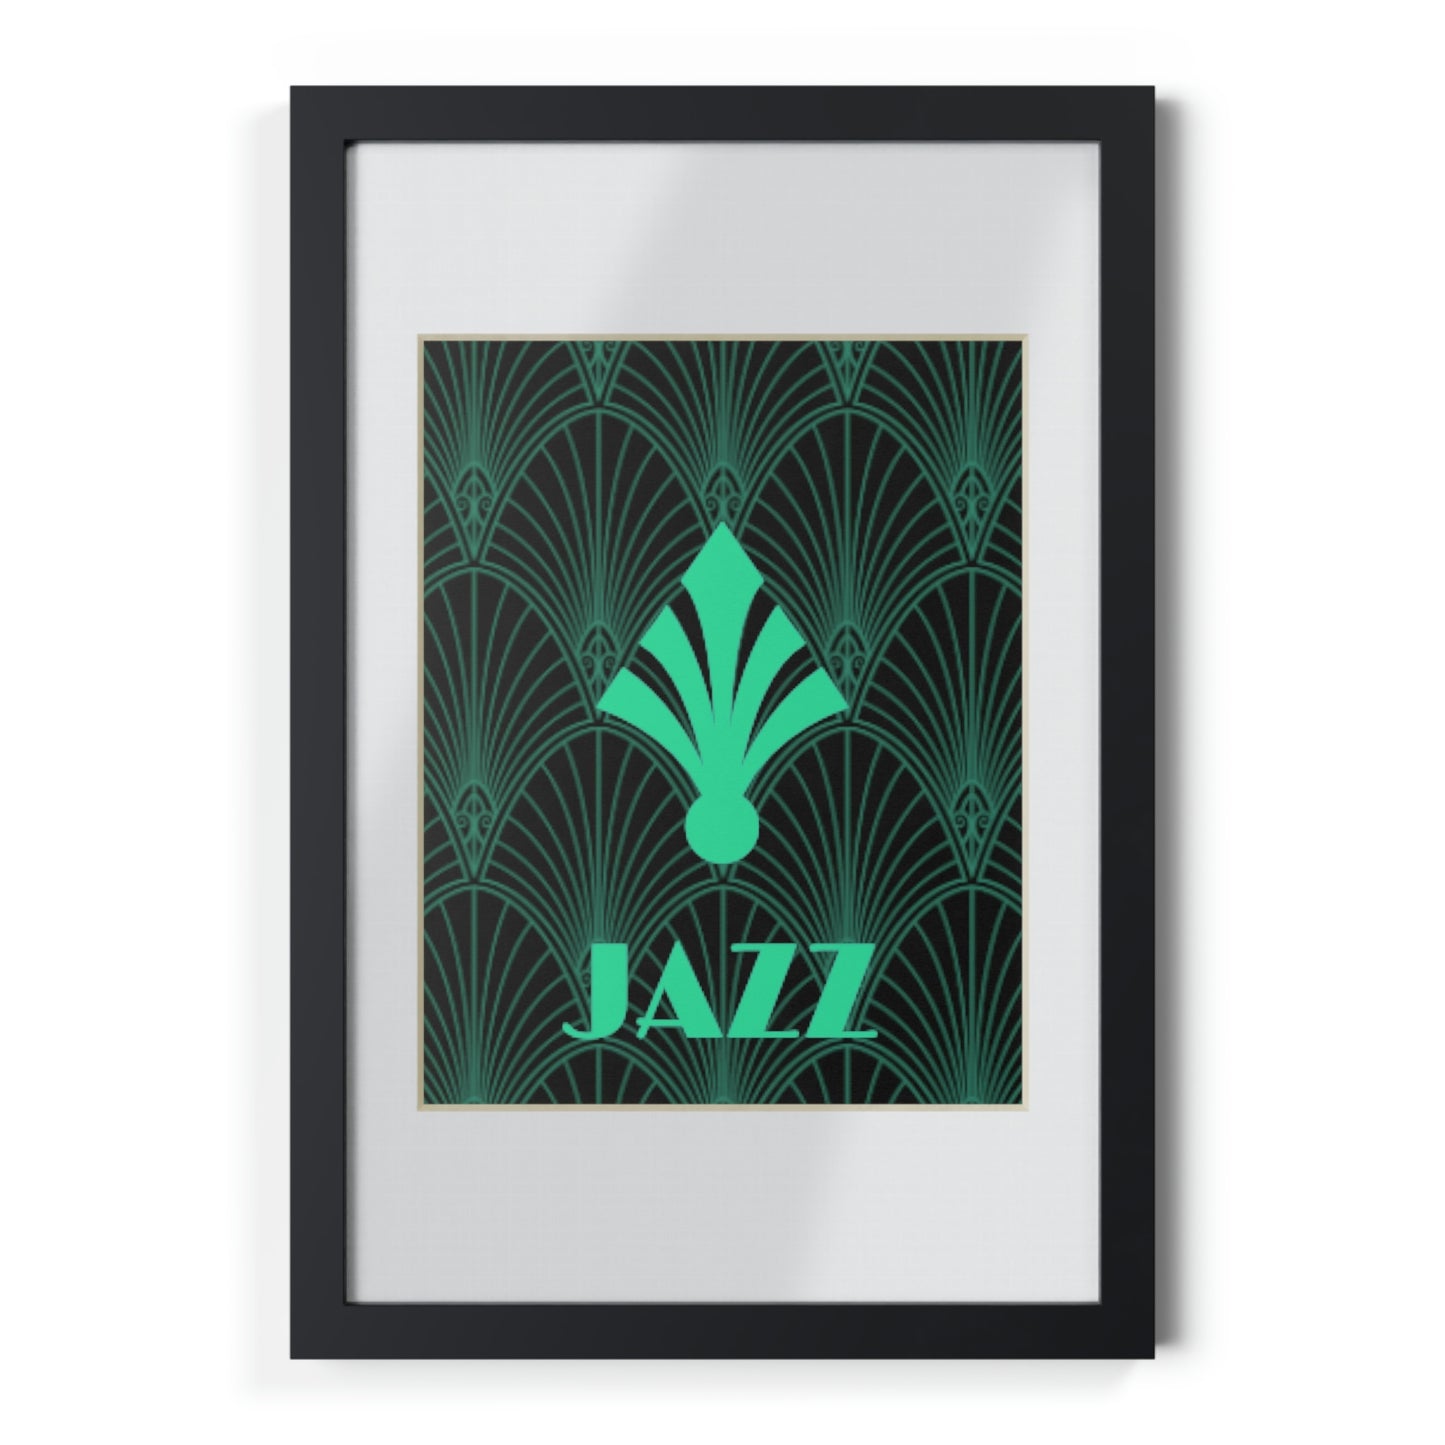 JAZZ - Framed Posters, Black